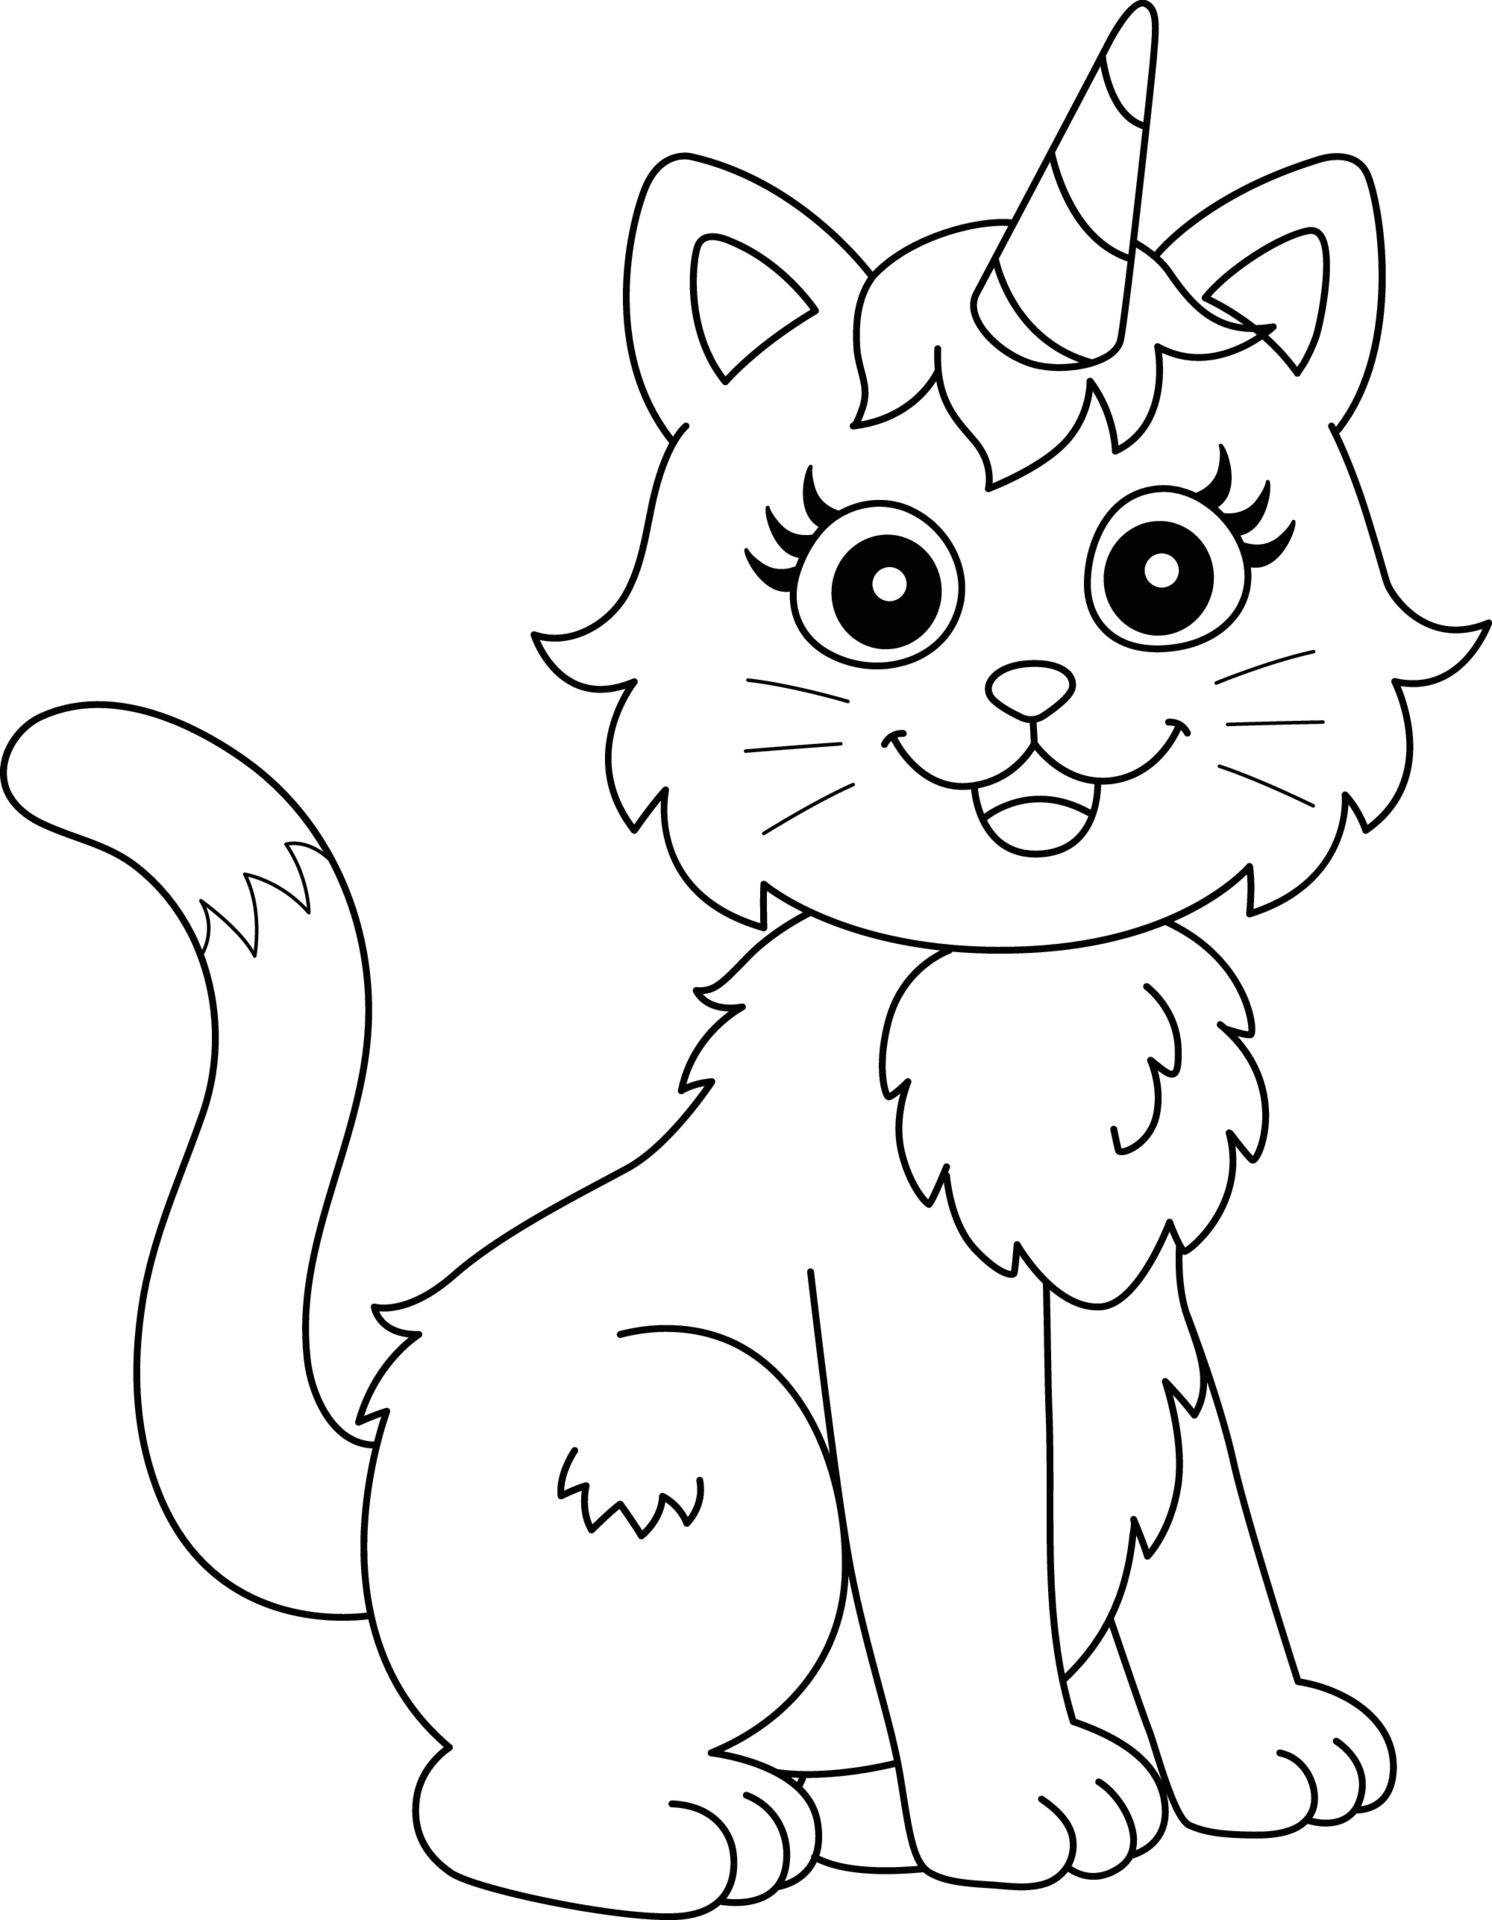 Desenho de um gato unicórnio fofo para colorir